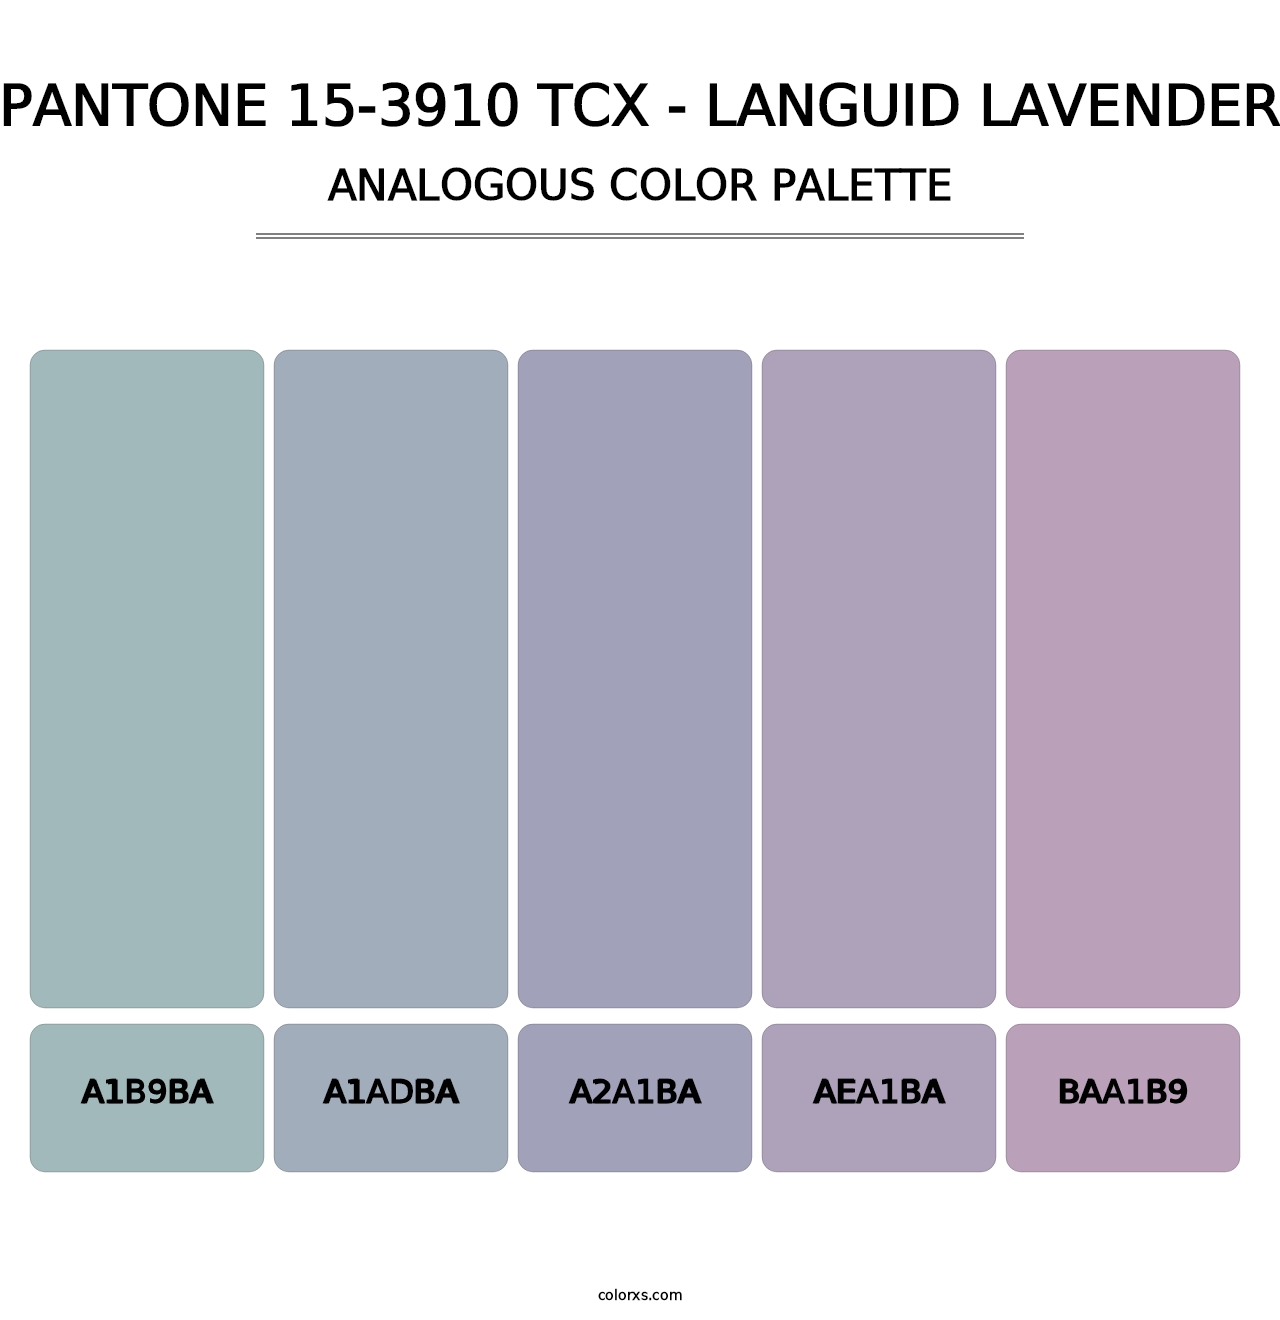 PANTONE 15-3910 TCX - Languid Lavender - Analogous Color Palette